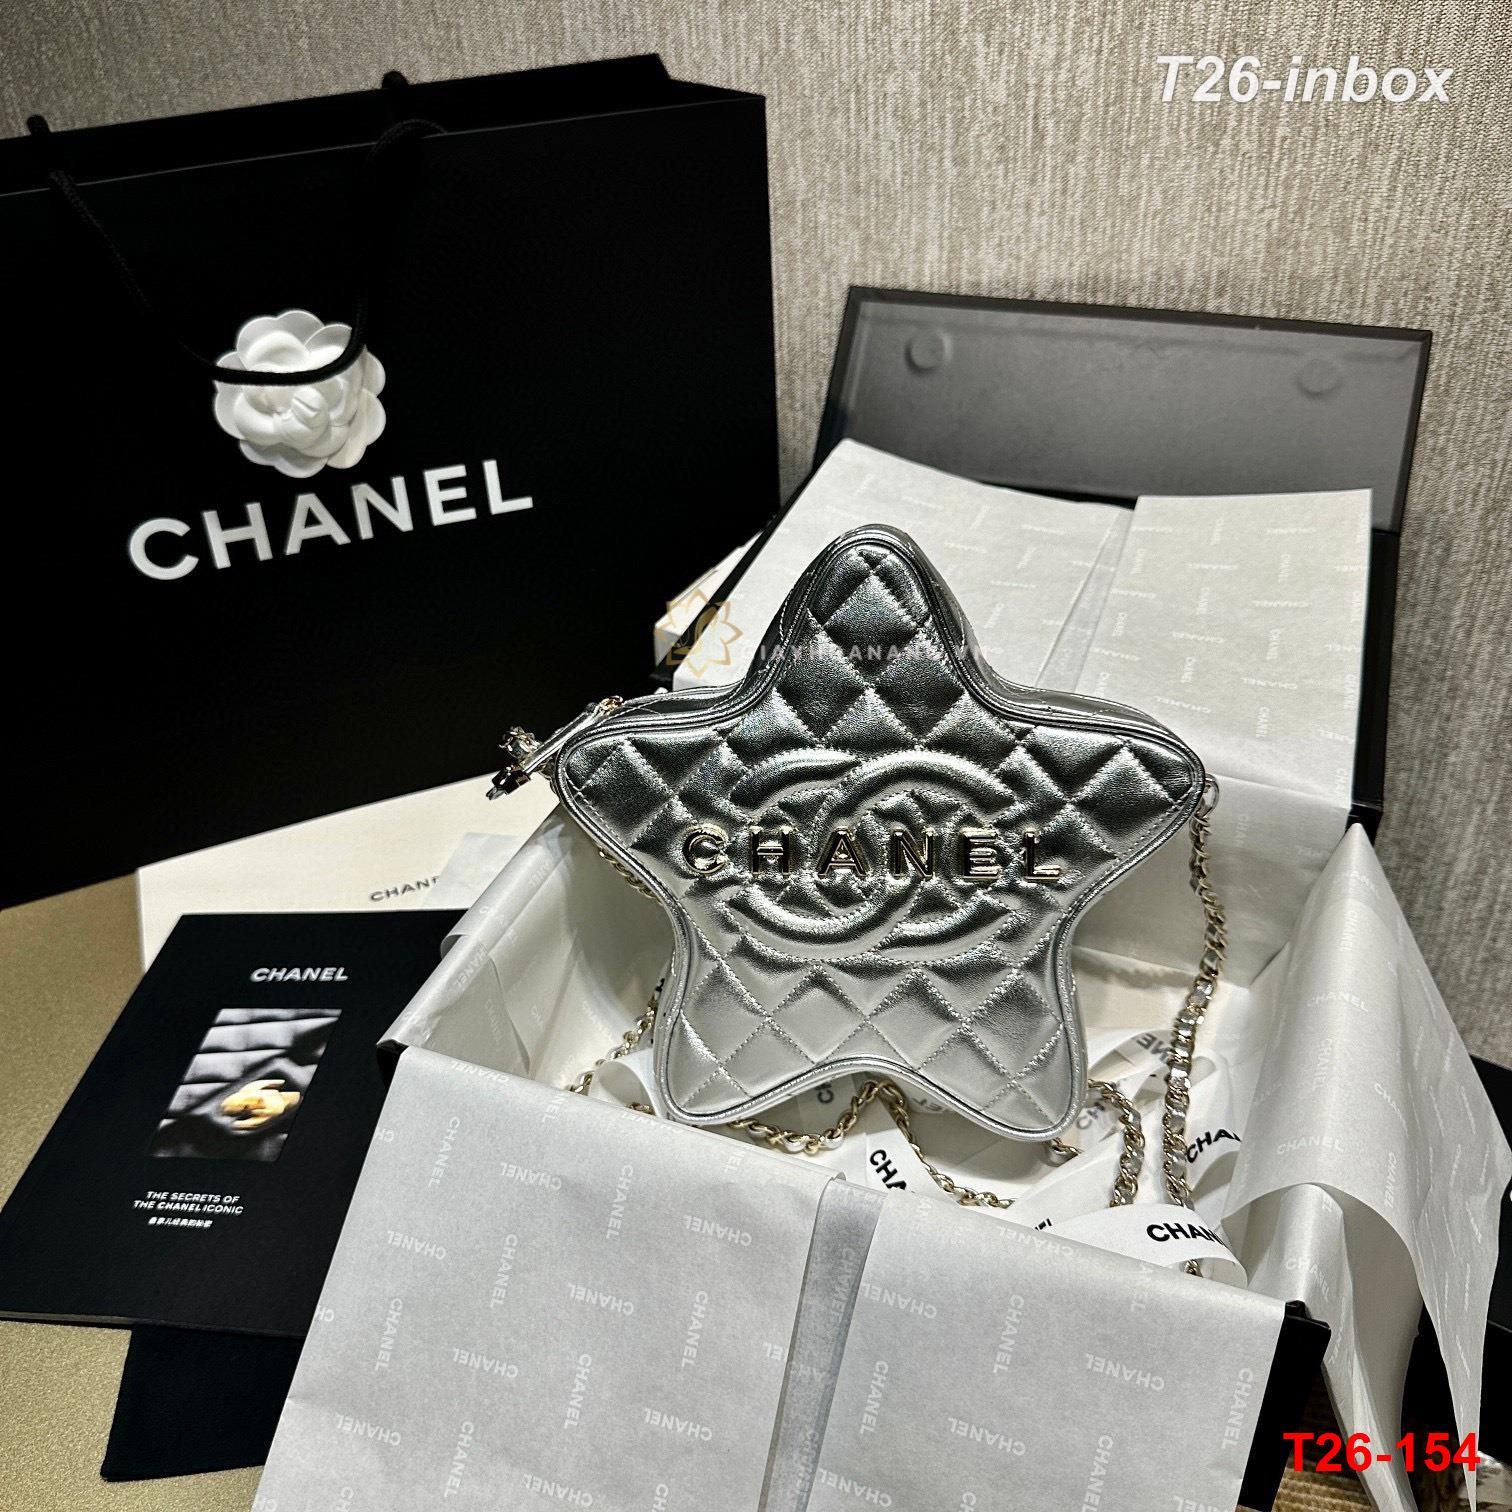 T26-154 Chanel túi siêu cấp